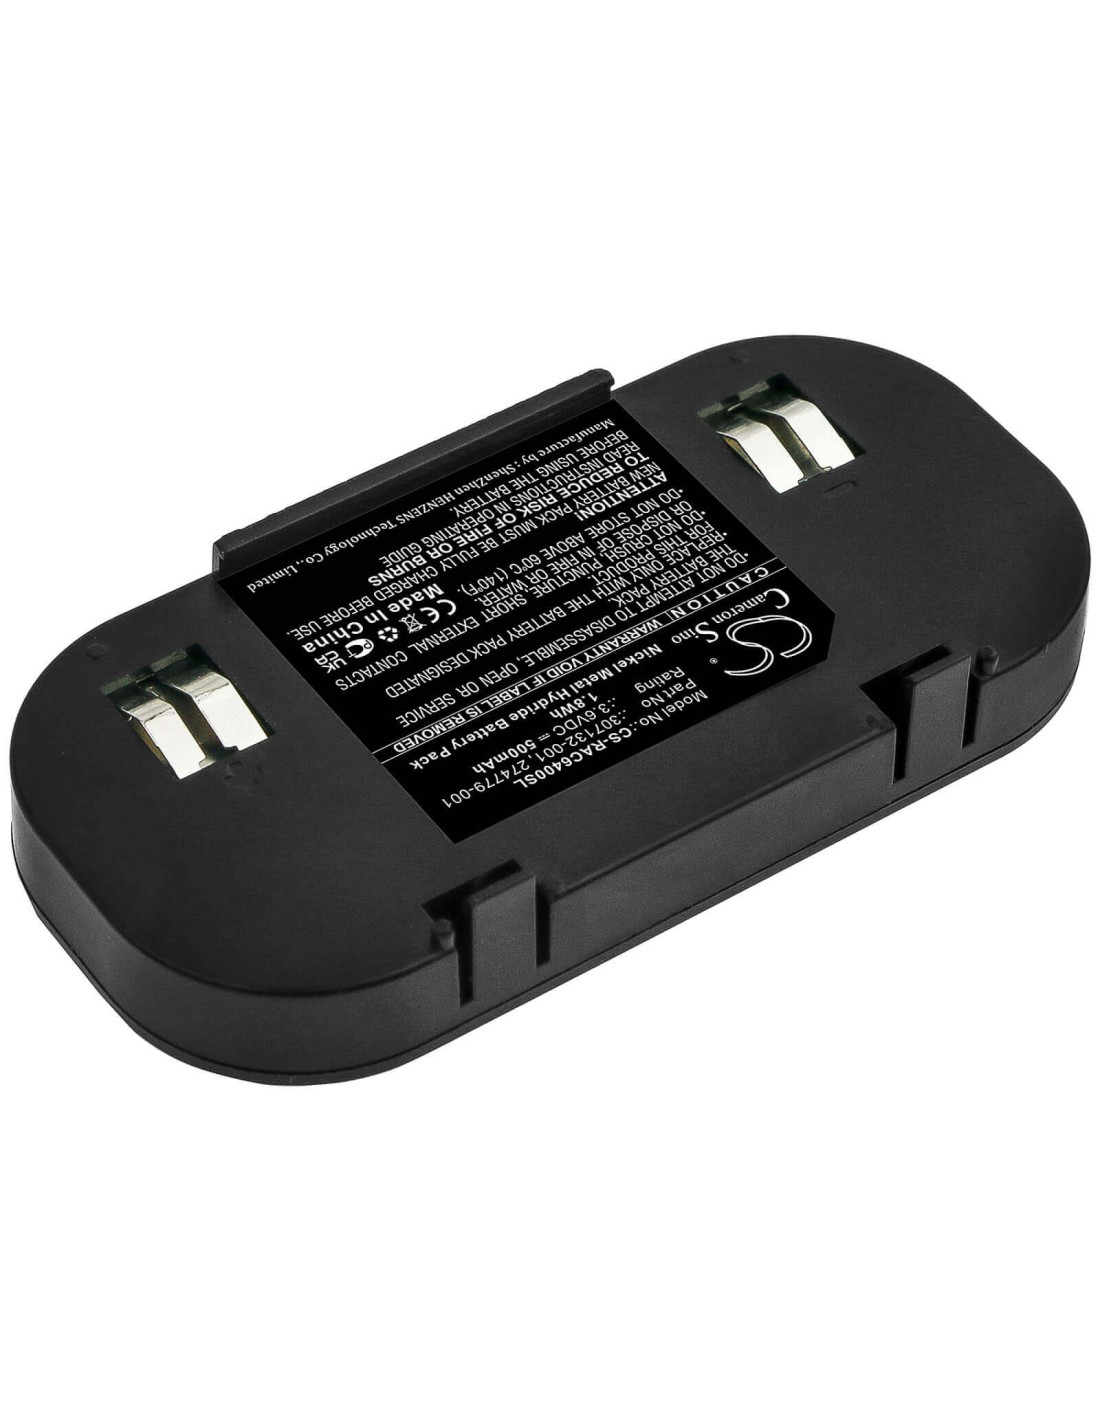 Battery for Hp, 201201-001, 201201-371, 201201-aa1 3.6V, 500mAh - 